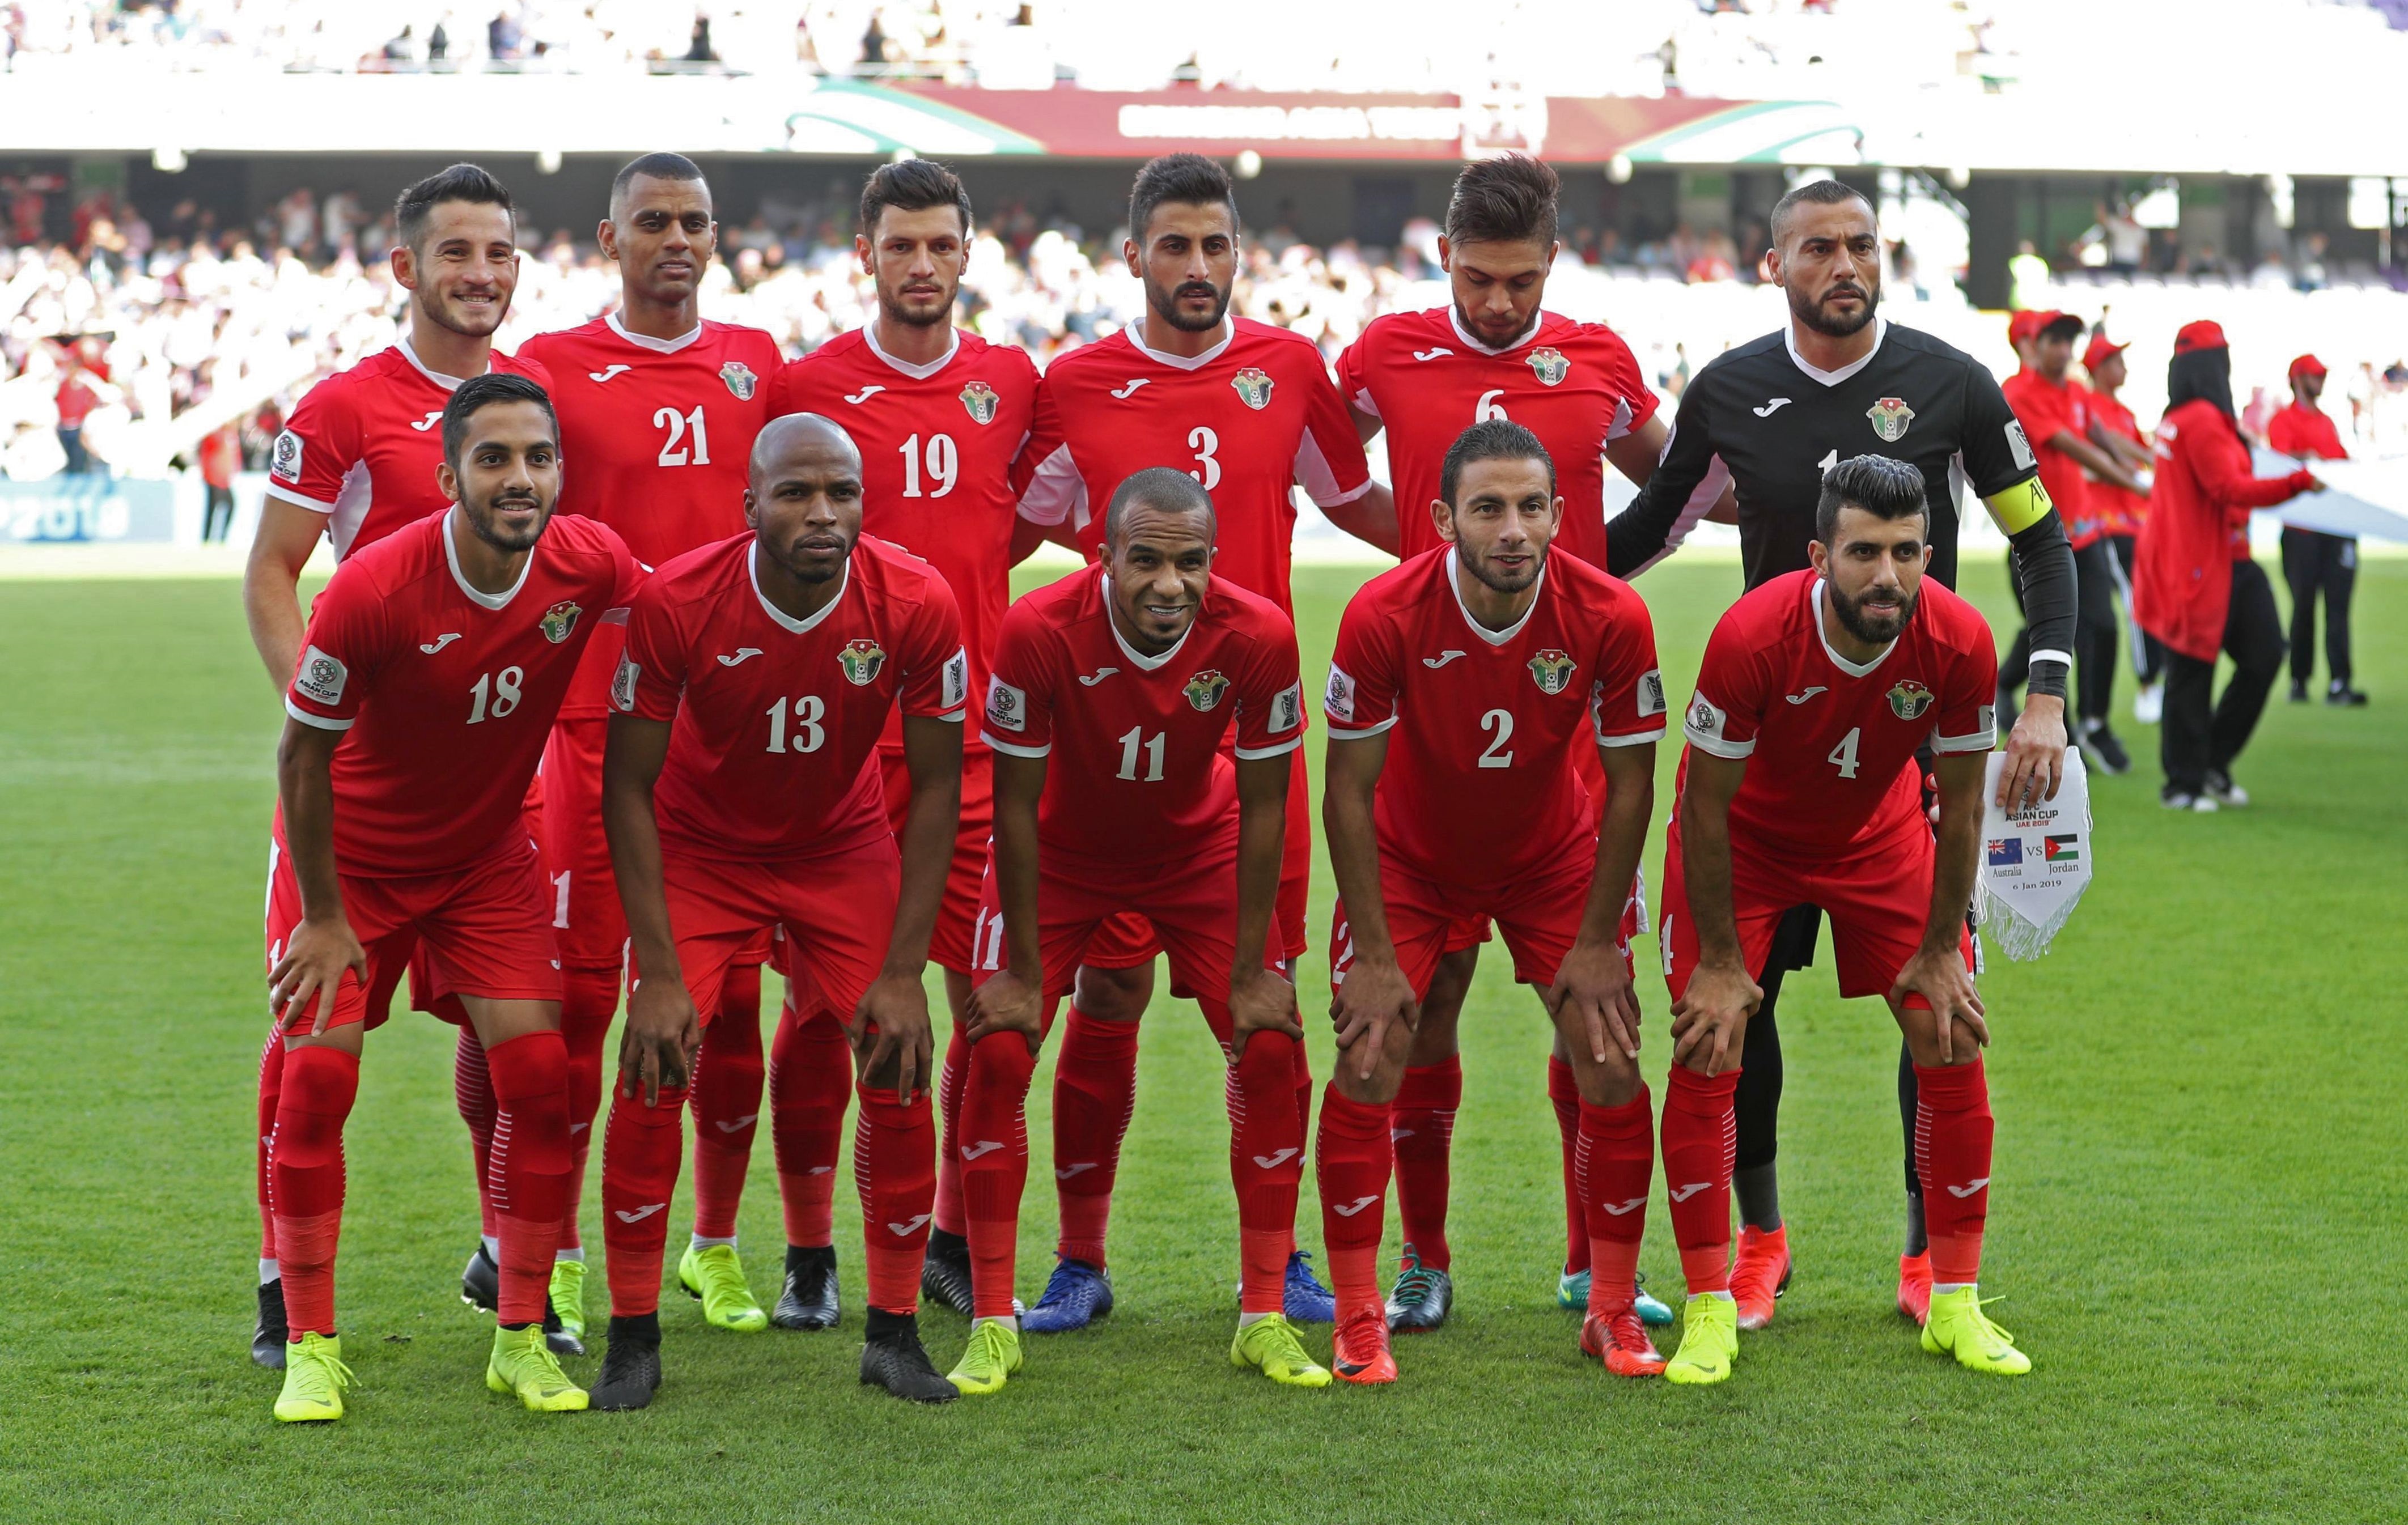 كأس آسيا 2019: الأردن للتأهل وسورية للتعويض